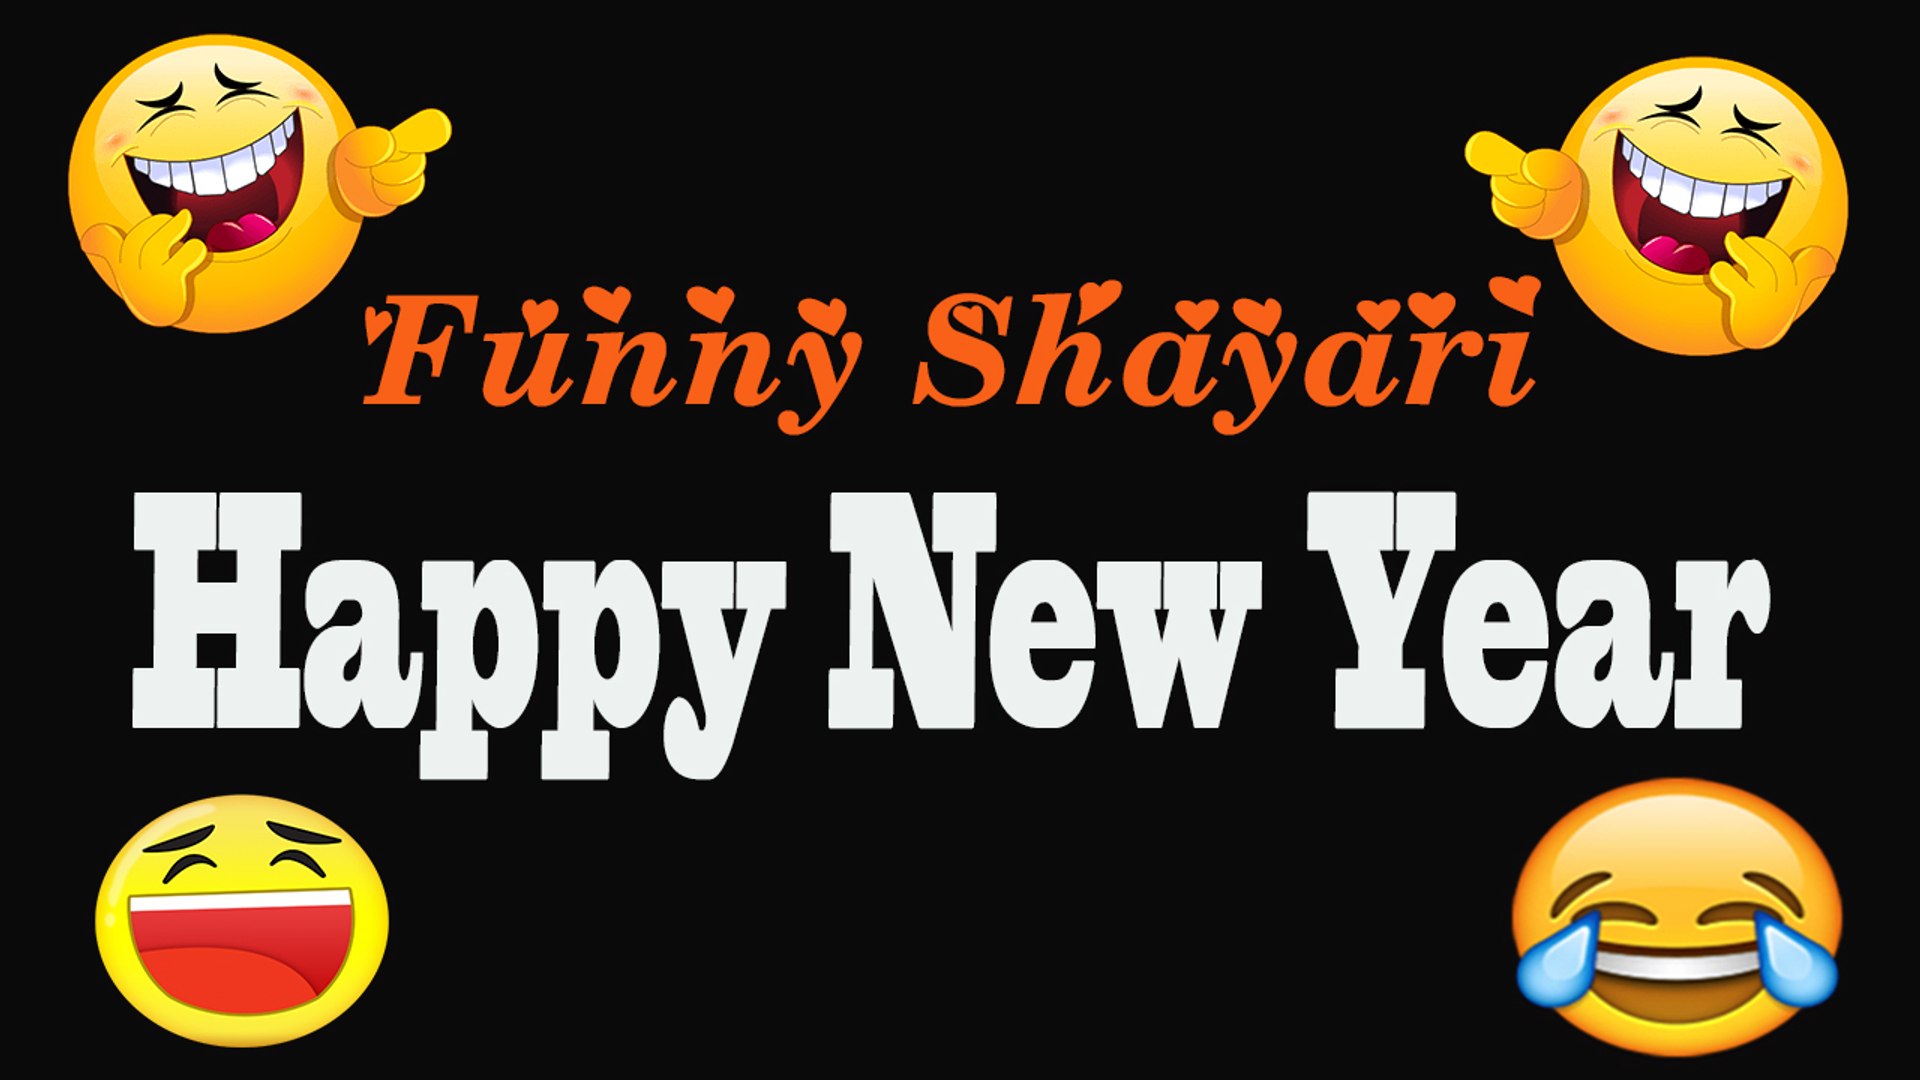 Happy New Year 2020 - Funny Shayari | फनी शायरी - हैप्पी न्यू ईयर शायरी  2020 | Latest Shayari Video - video Dailymotion